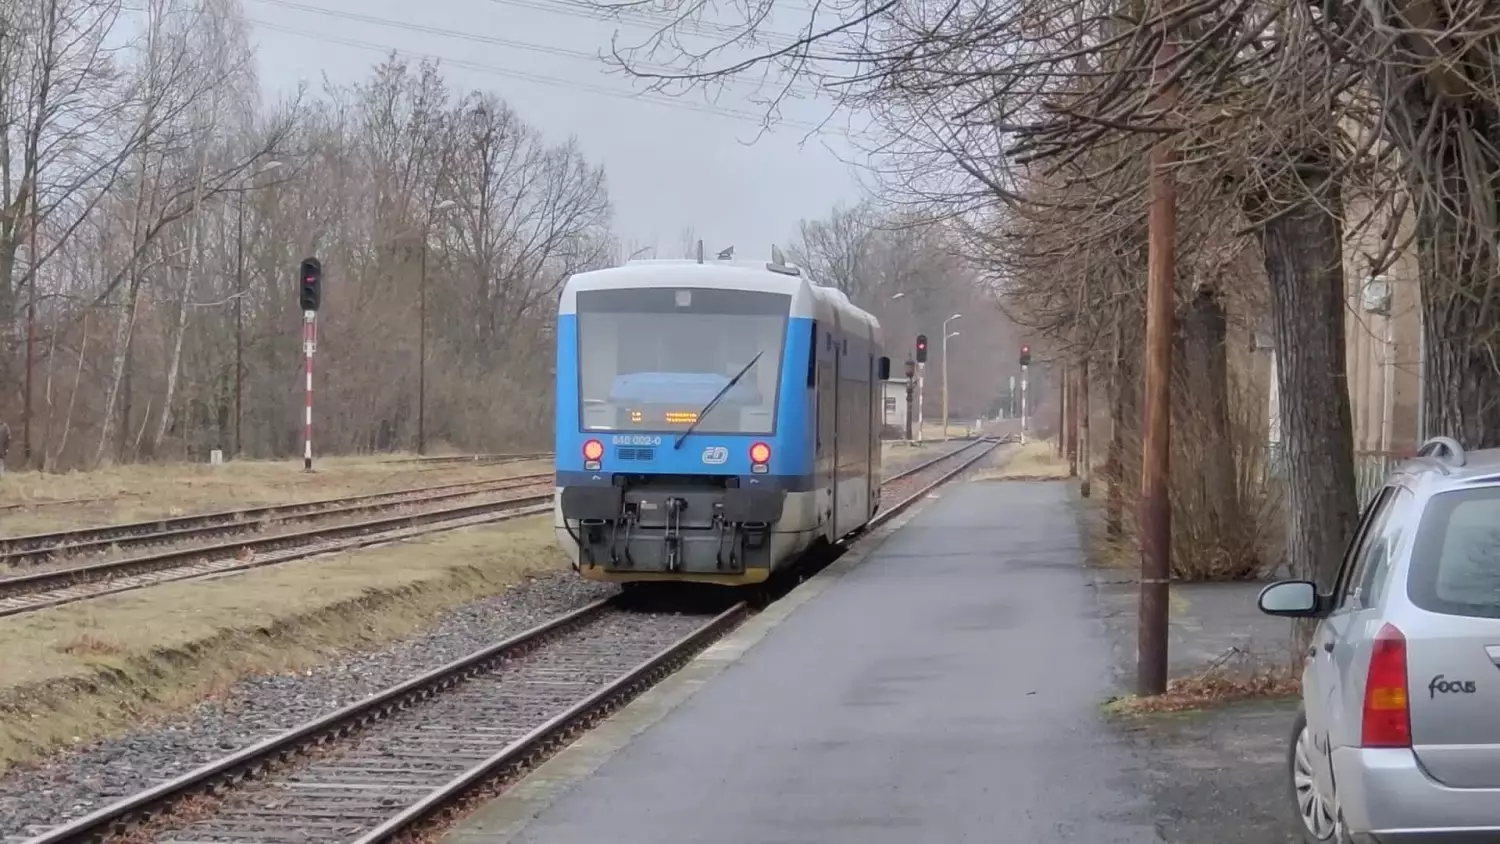 České dráhy wjechały testowo na stację kolejową w Zawidowie